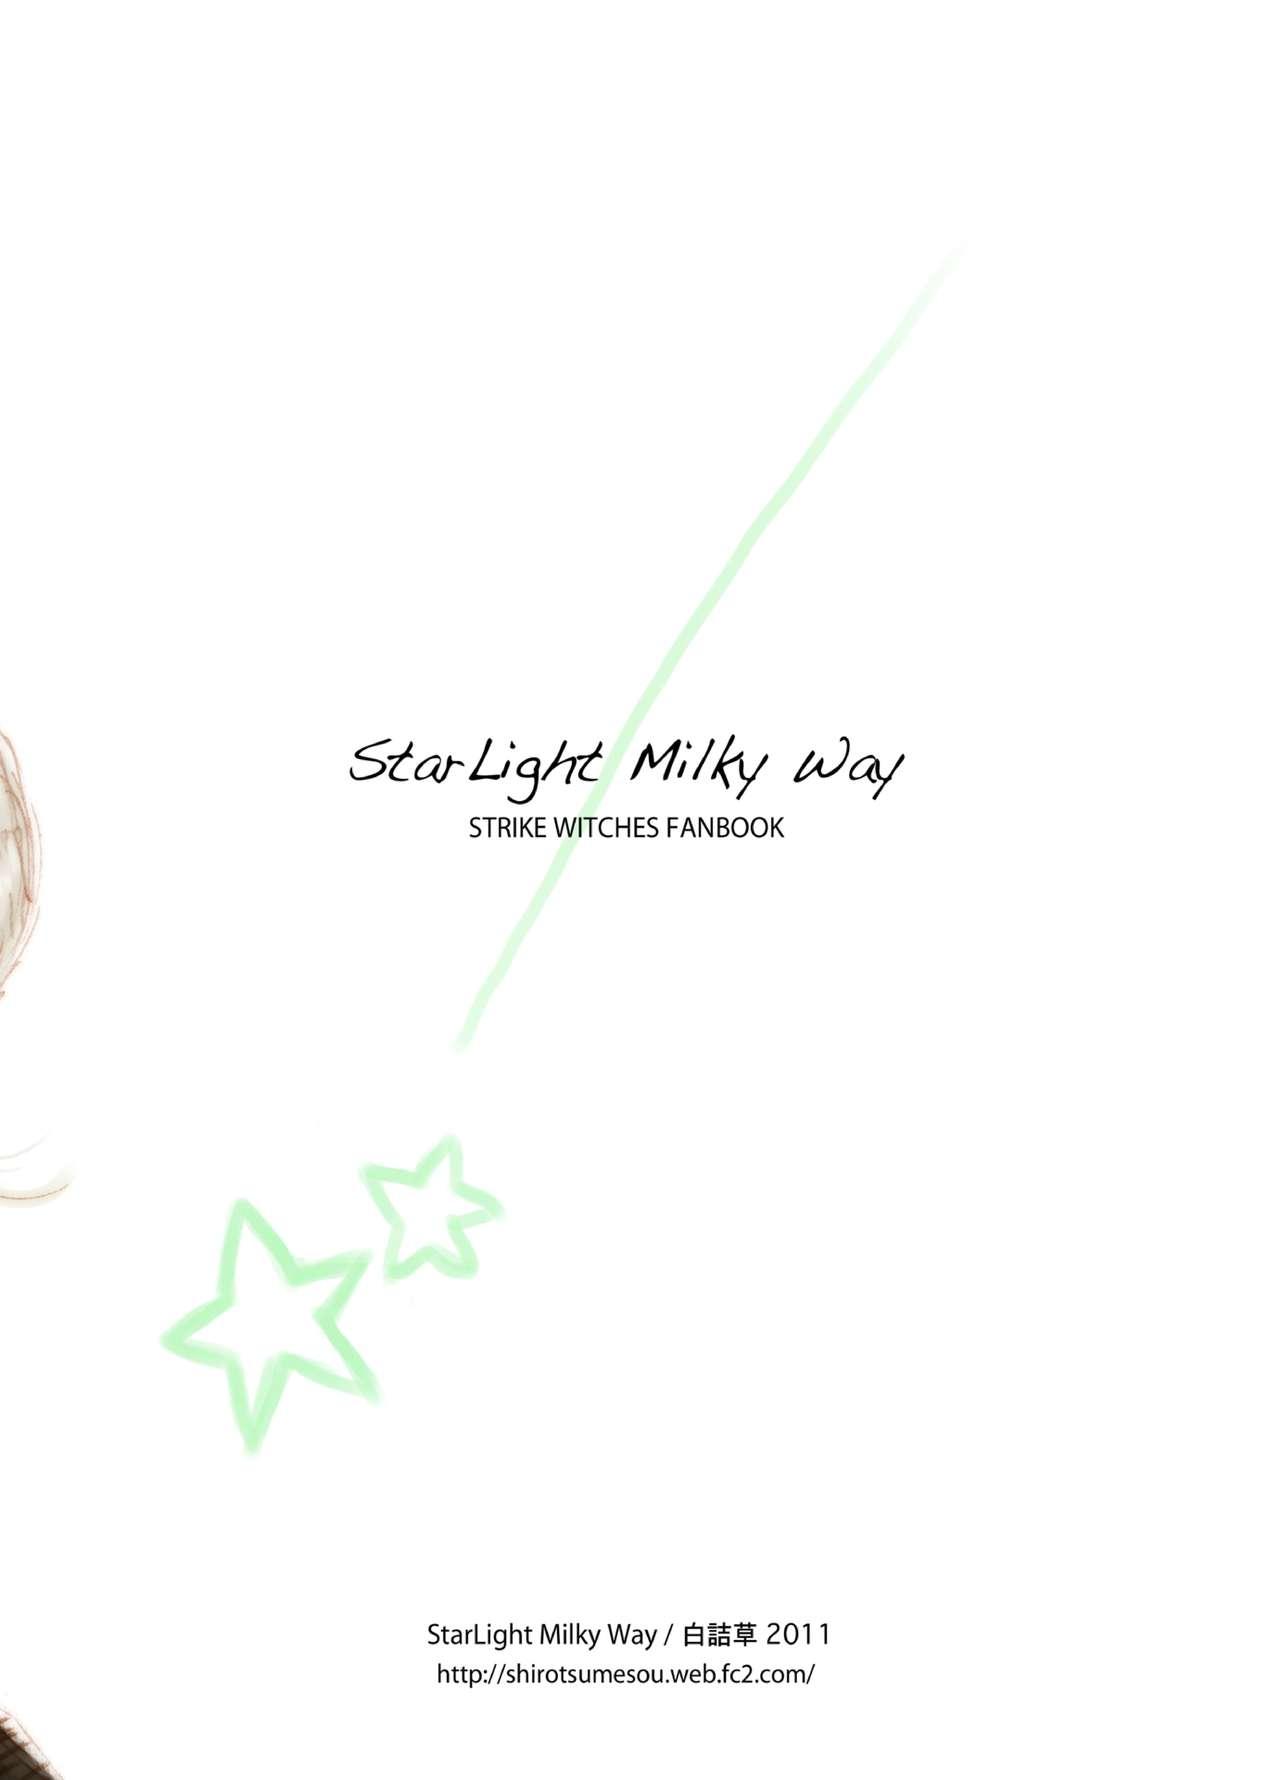 Starlight MilkyWay 25